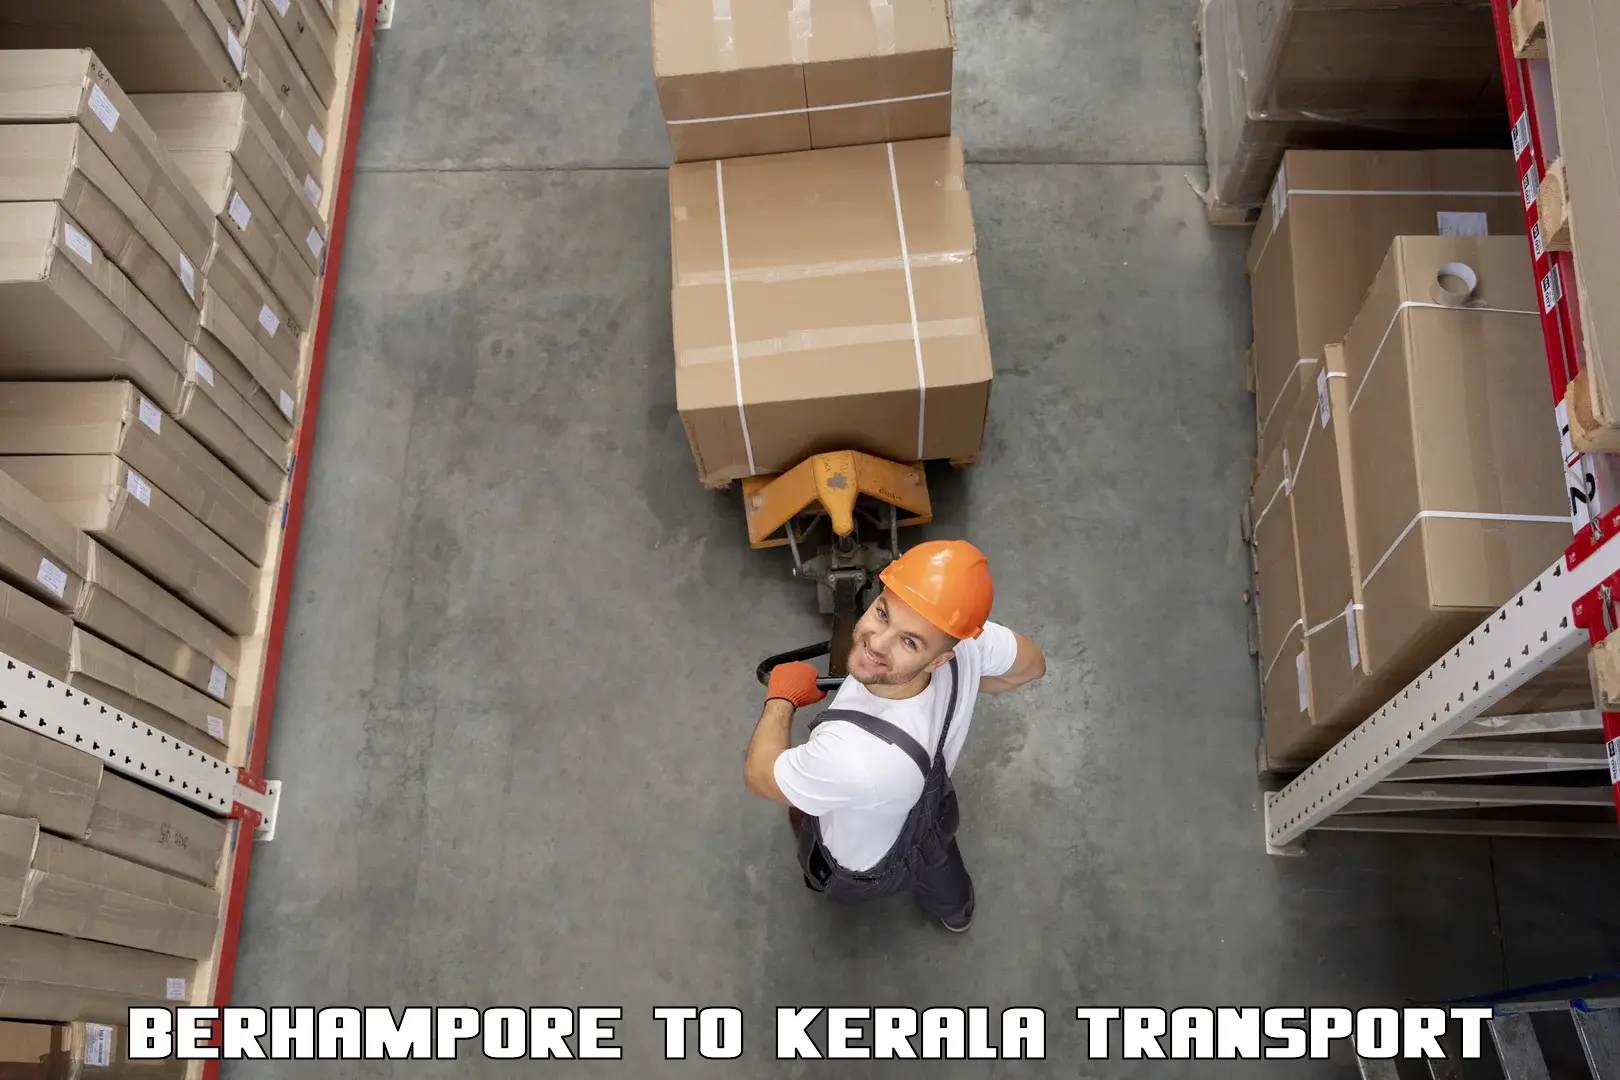 Domestic transport services Berhampore to Cochin Port Kochi